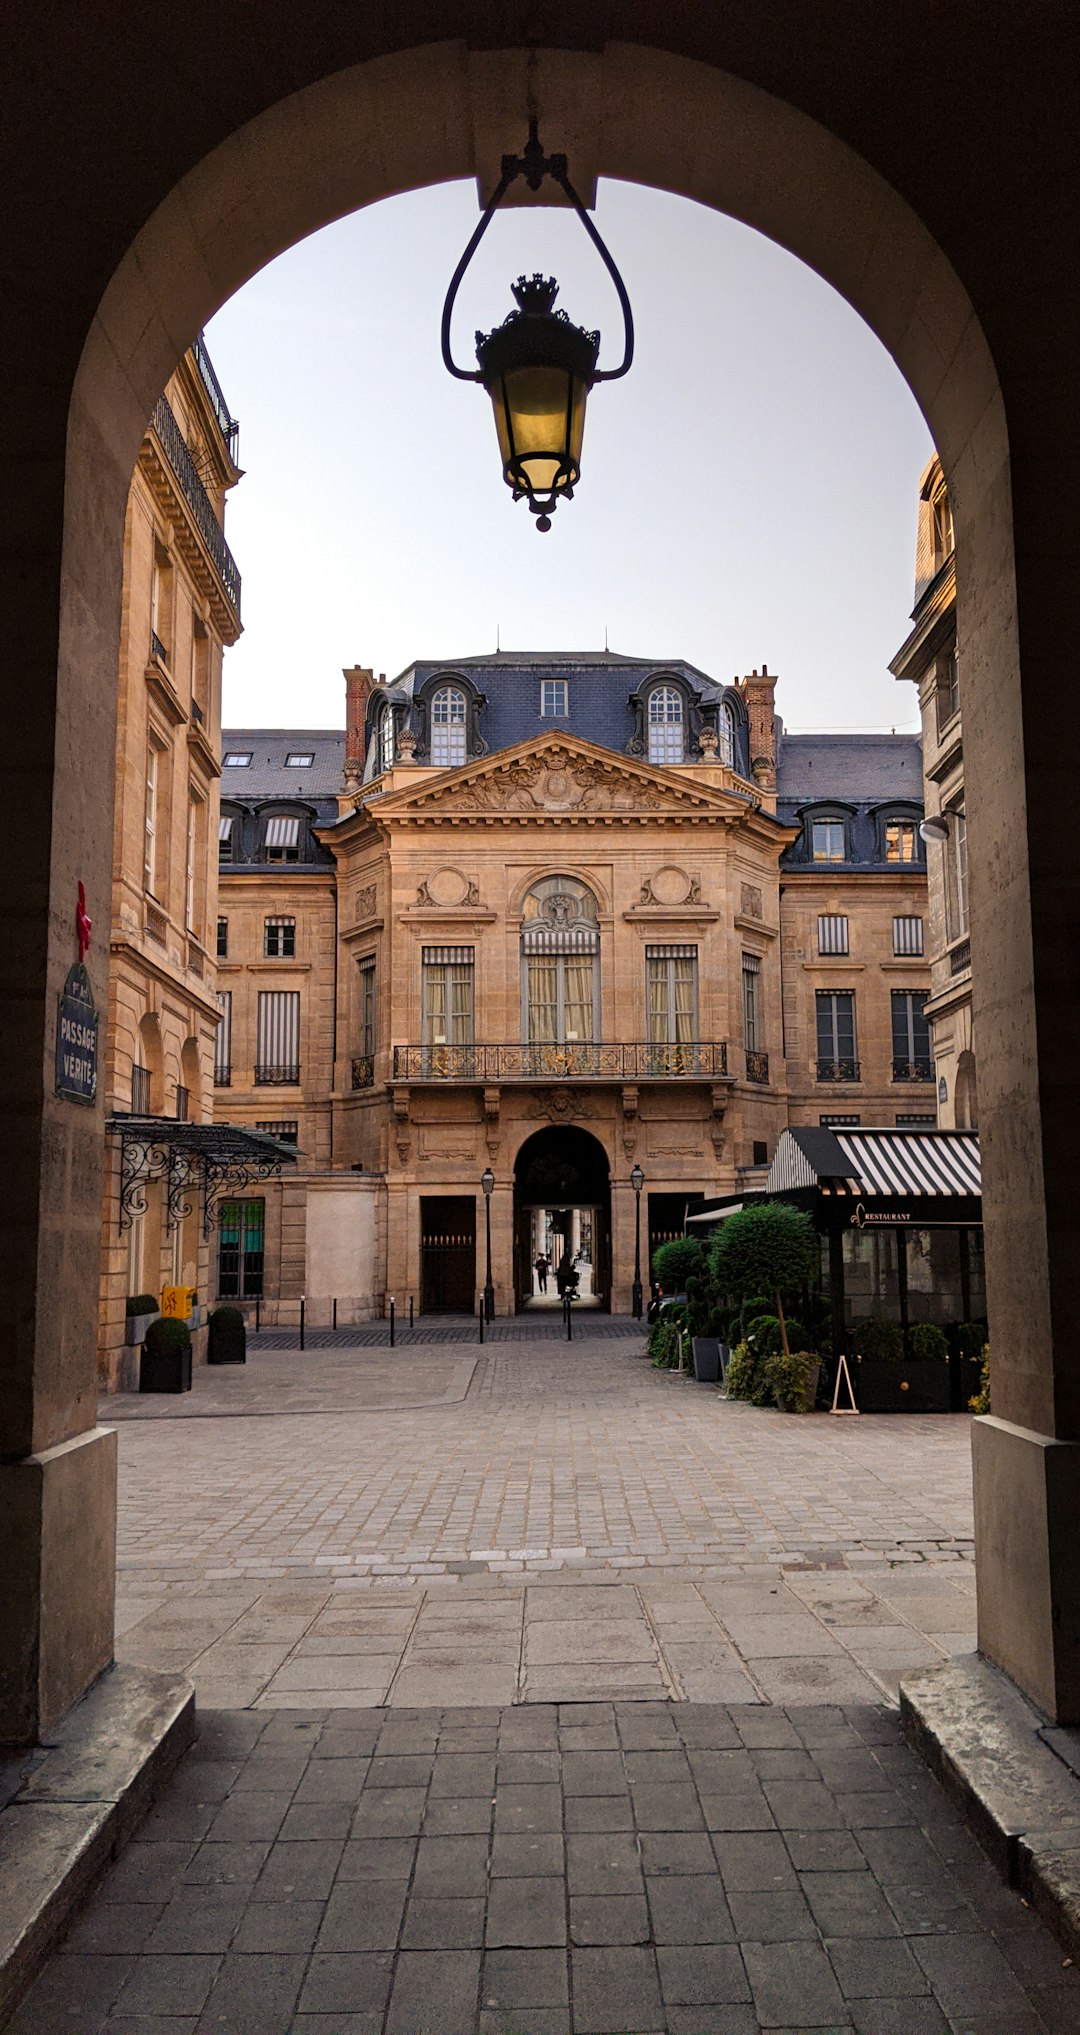 Town photo spot 1 Galerie des Proues Paris